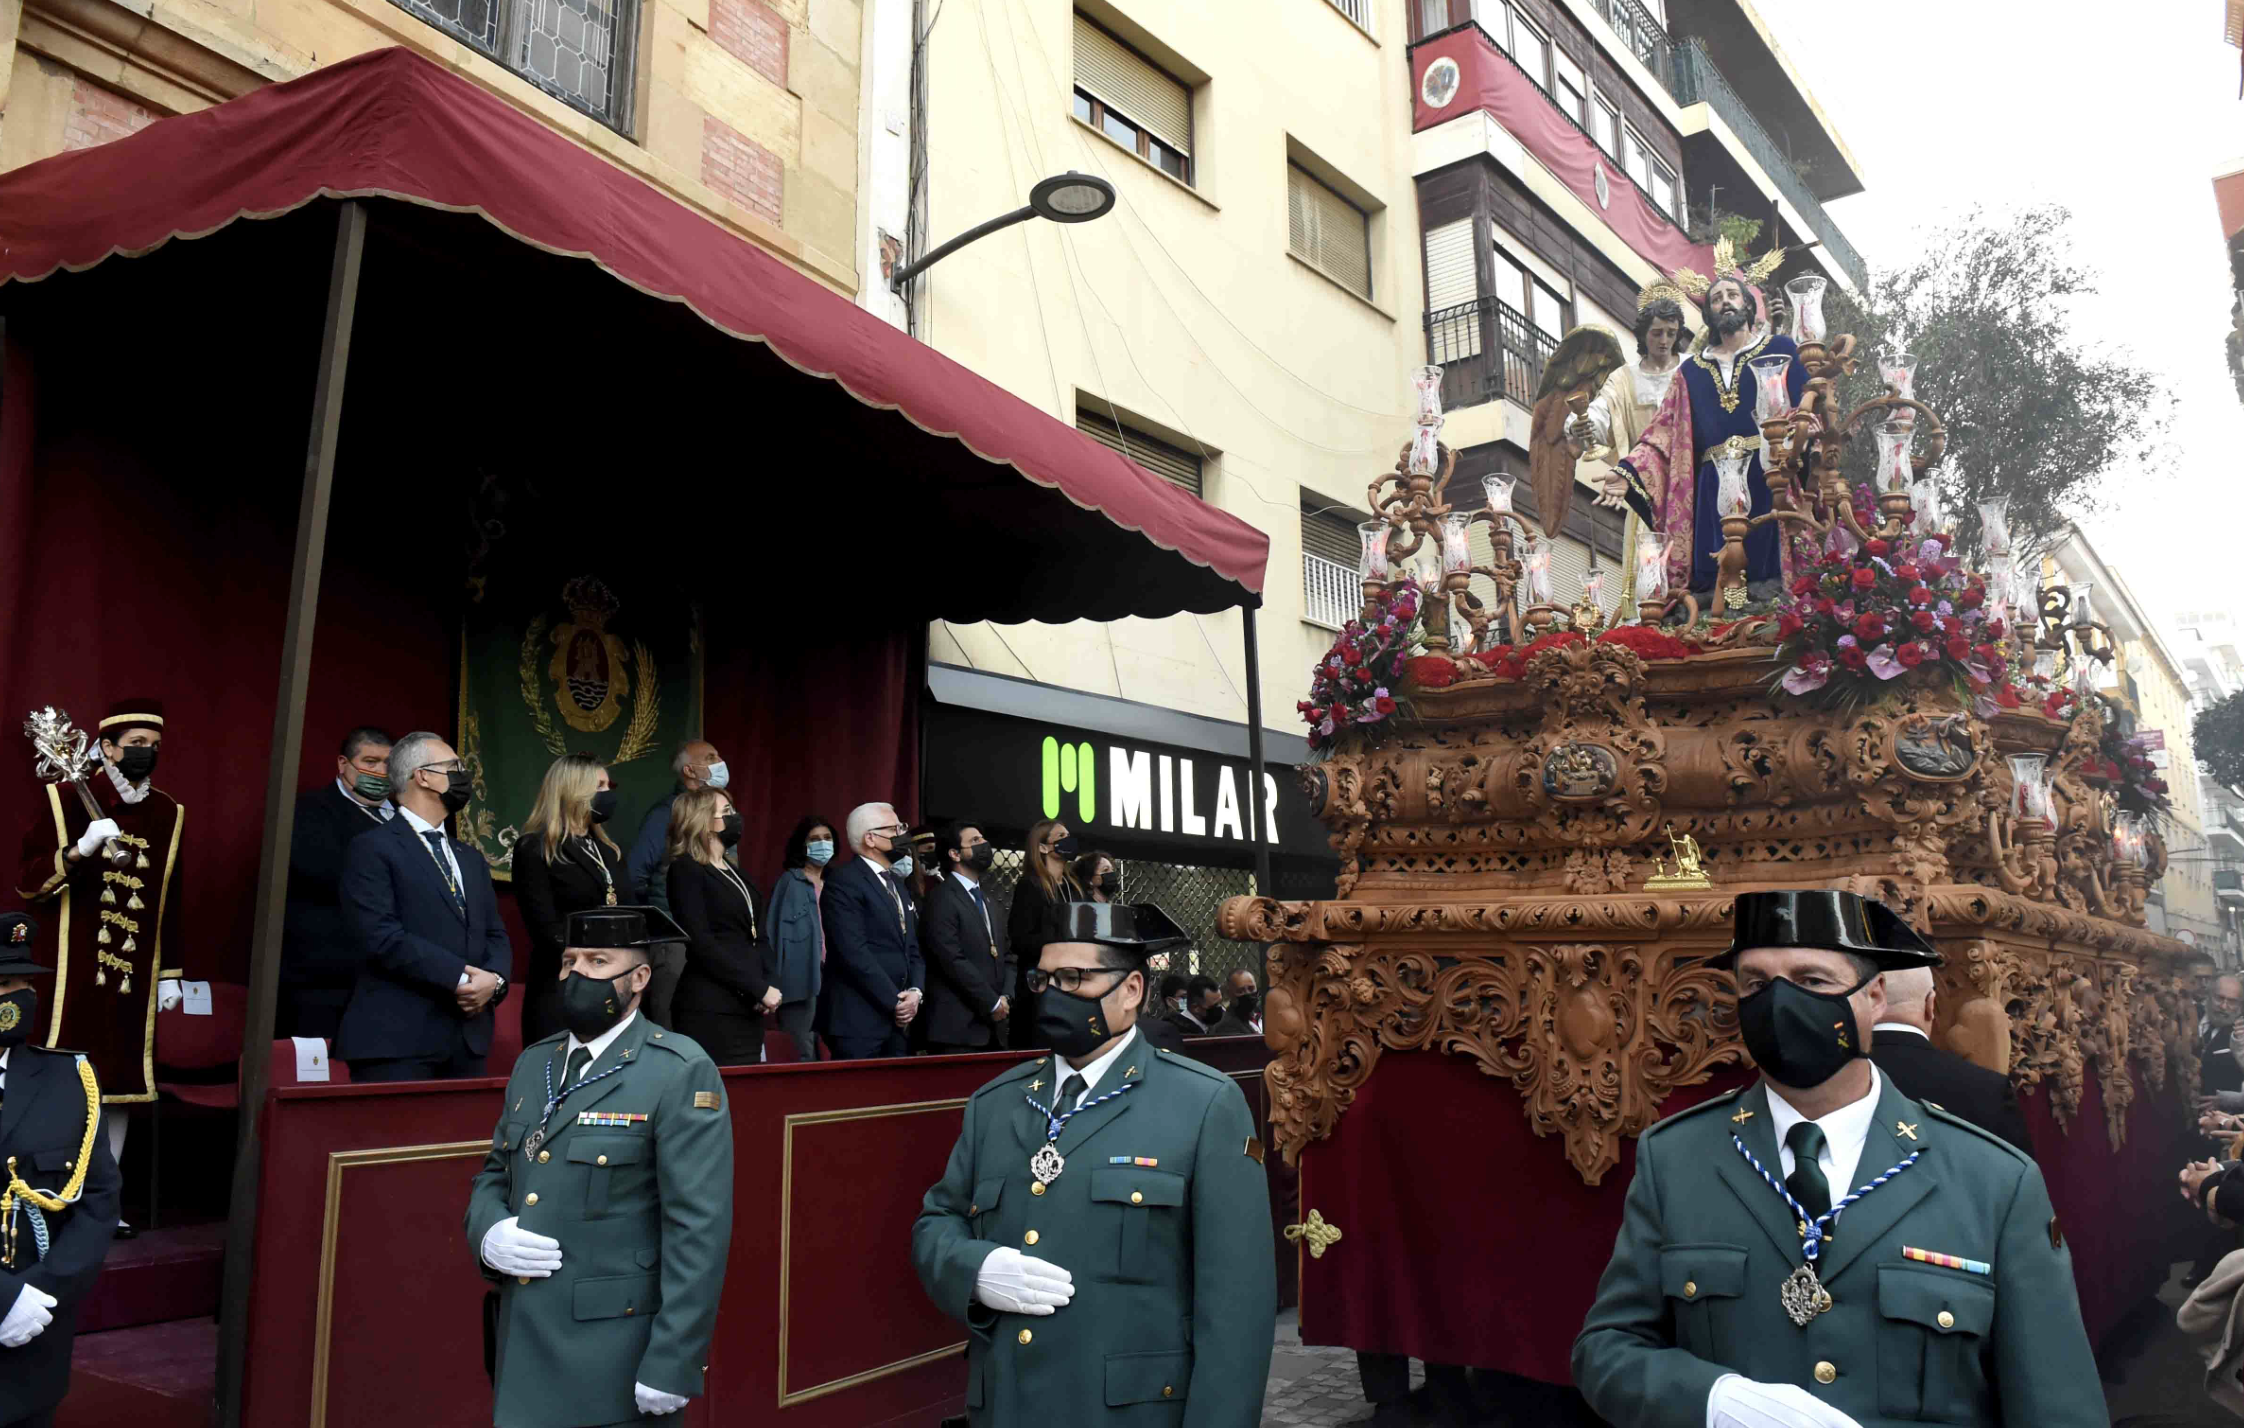 La carrera oficial de la Semana Santa de Algeciras tendrá cámaras de seguridad tras el ataque yihadista. Pasado Domingo de Ramos, en una imagen del Ayuntamiento de Algeciras.